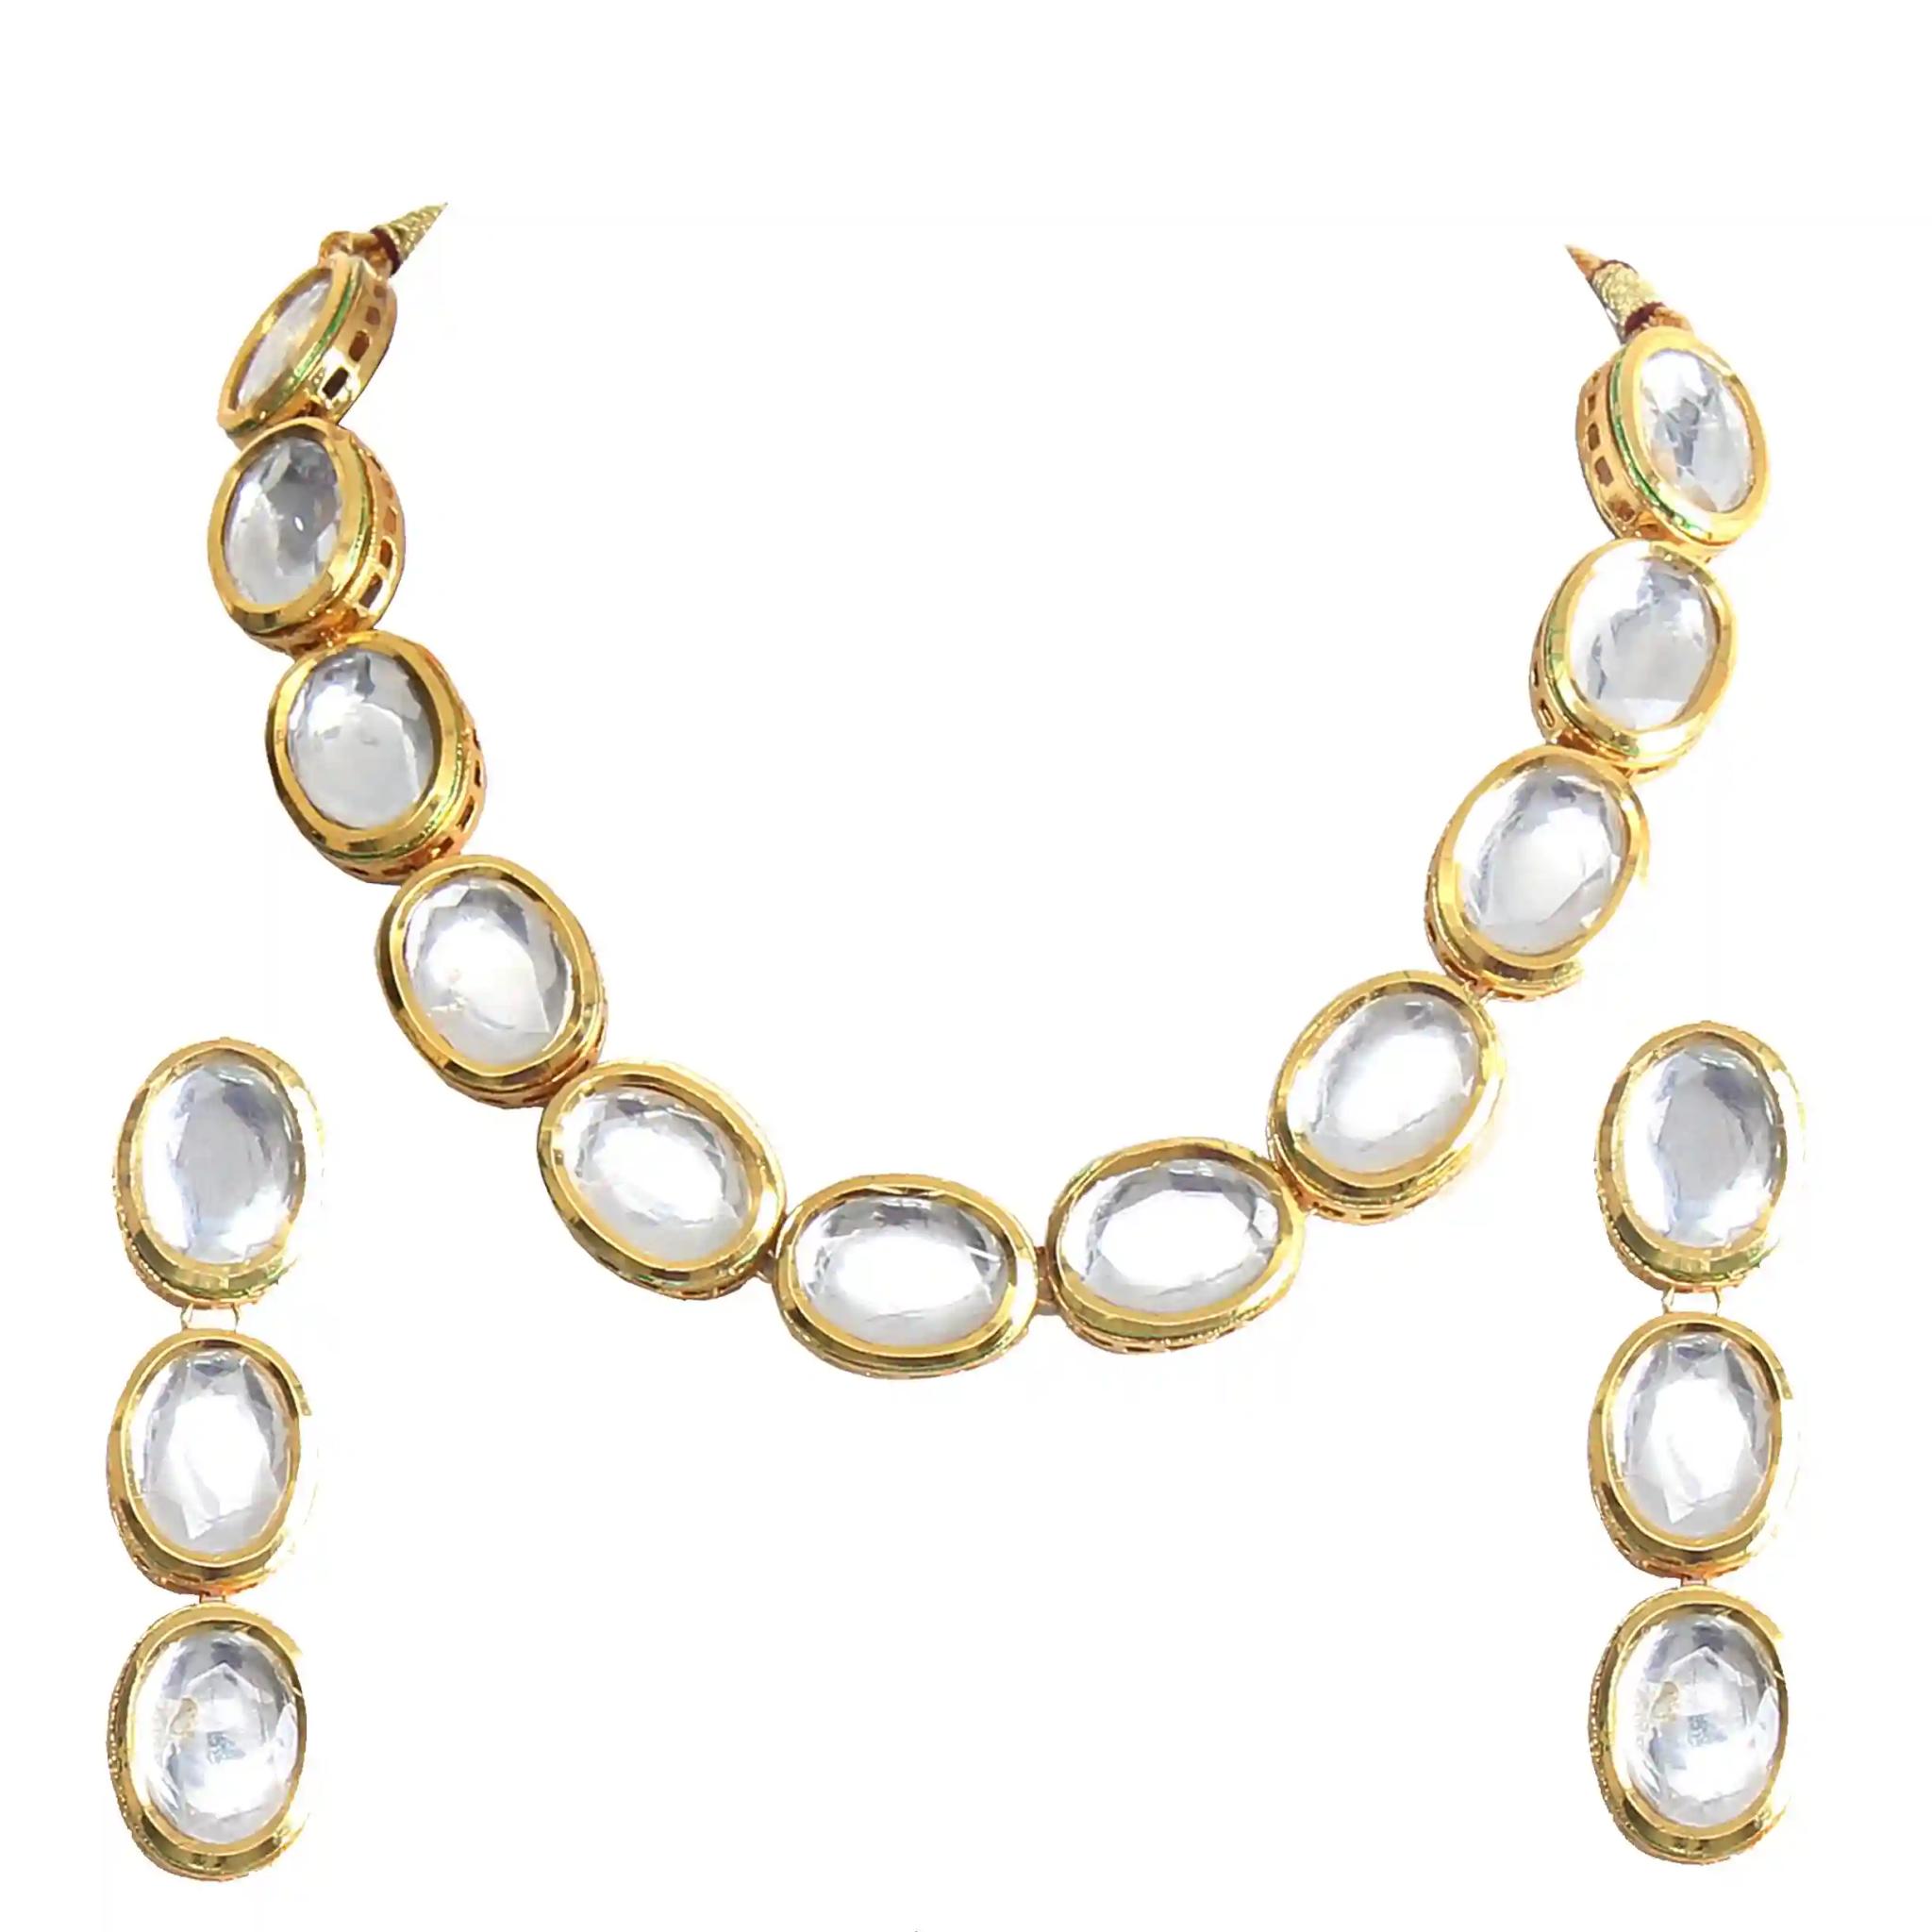 Gold Plated(18k) Round Kundan Stone Necklace Set - White